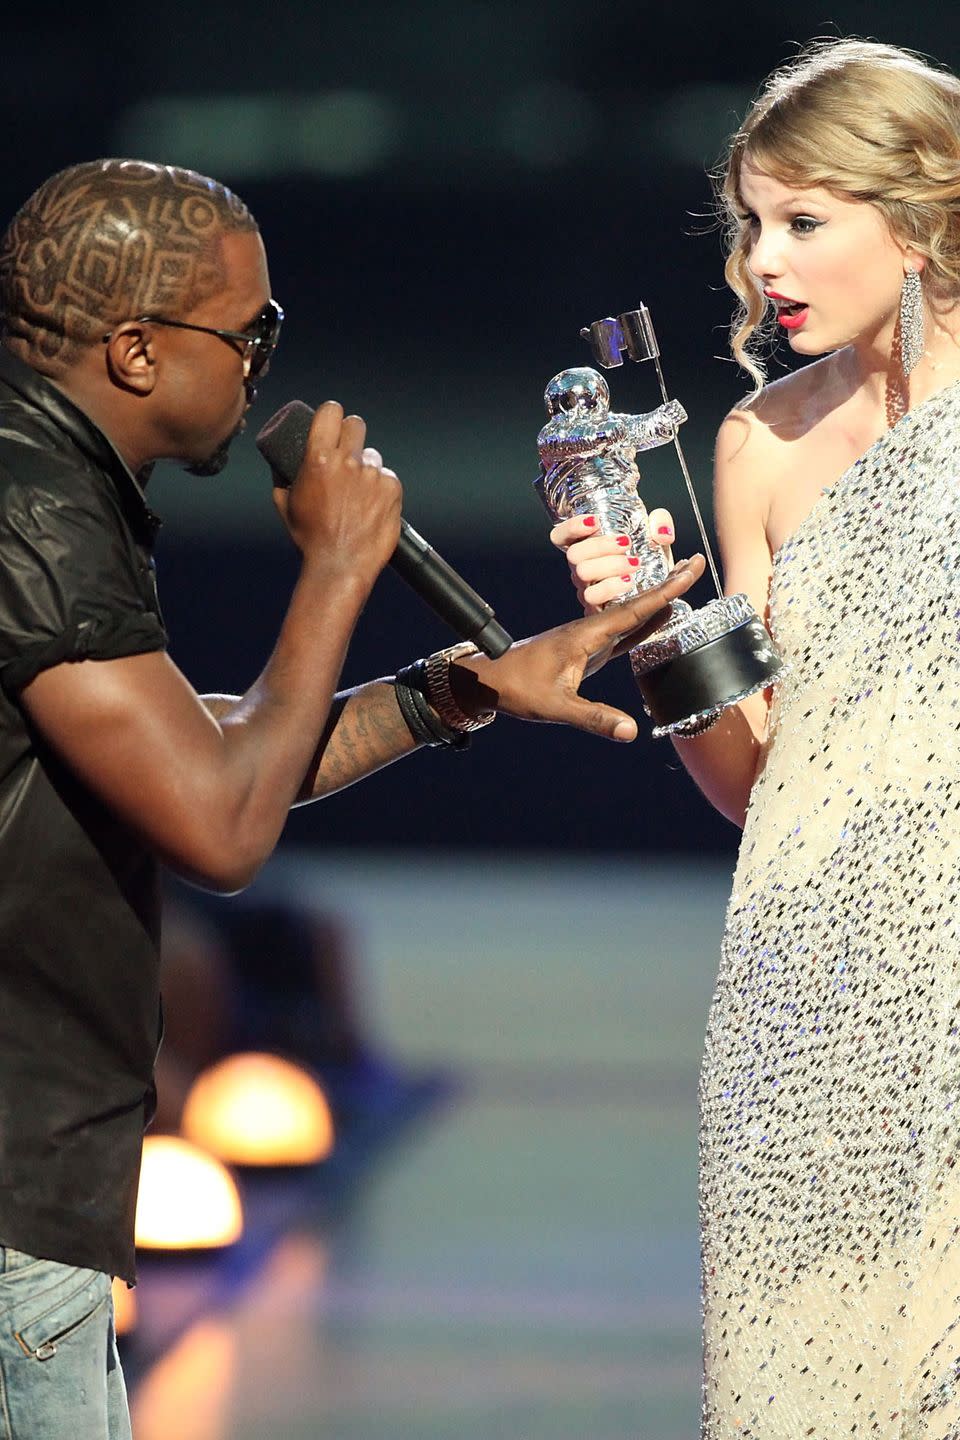 2009: Kanye West vs. Taylor Swift